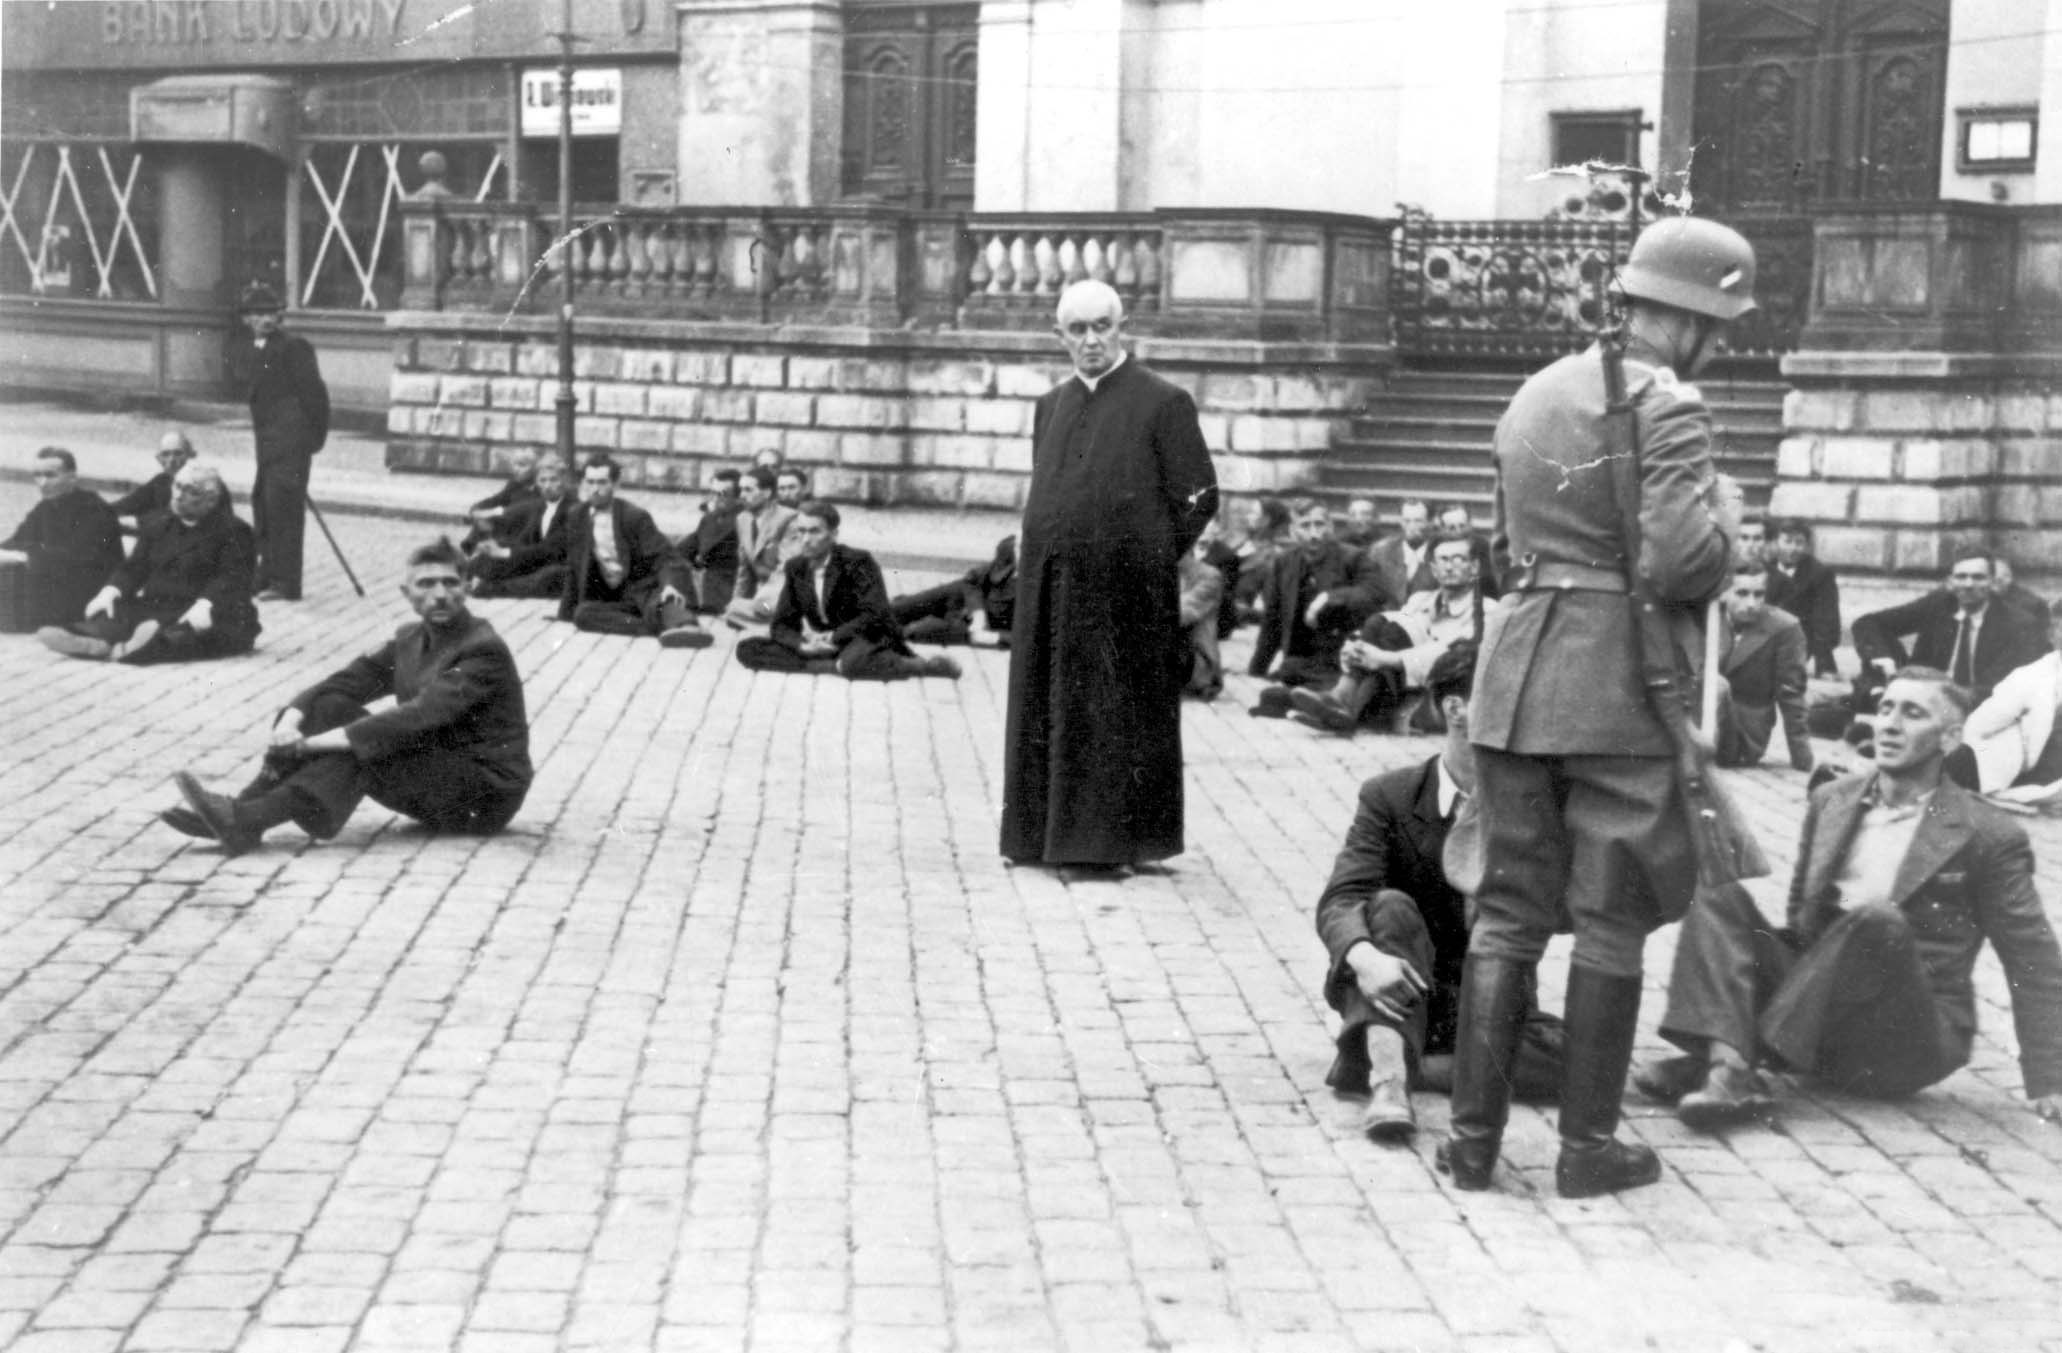 Aresztowani Polacy czekający na rozstrzelanie na Starym Rynku w Bydgoszczy (wrzesień 1939), fot. domena publiczna